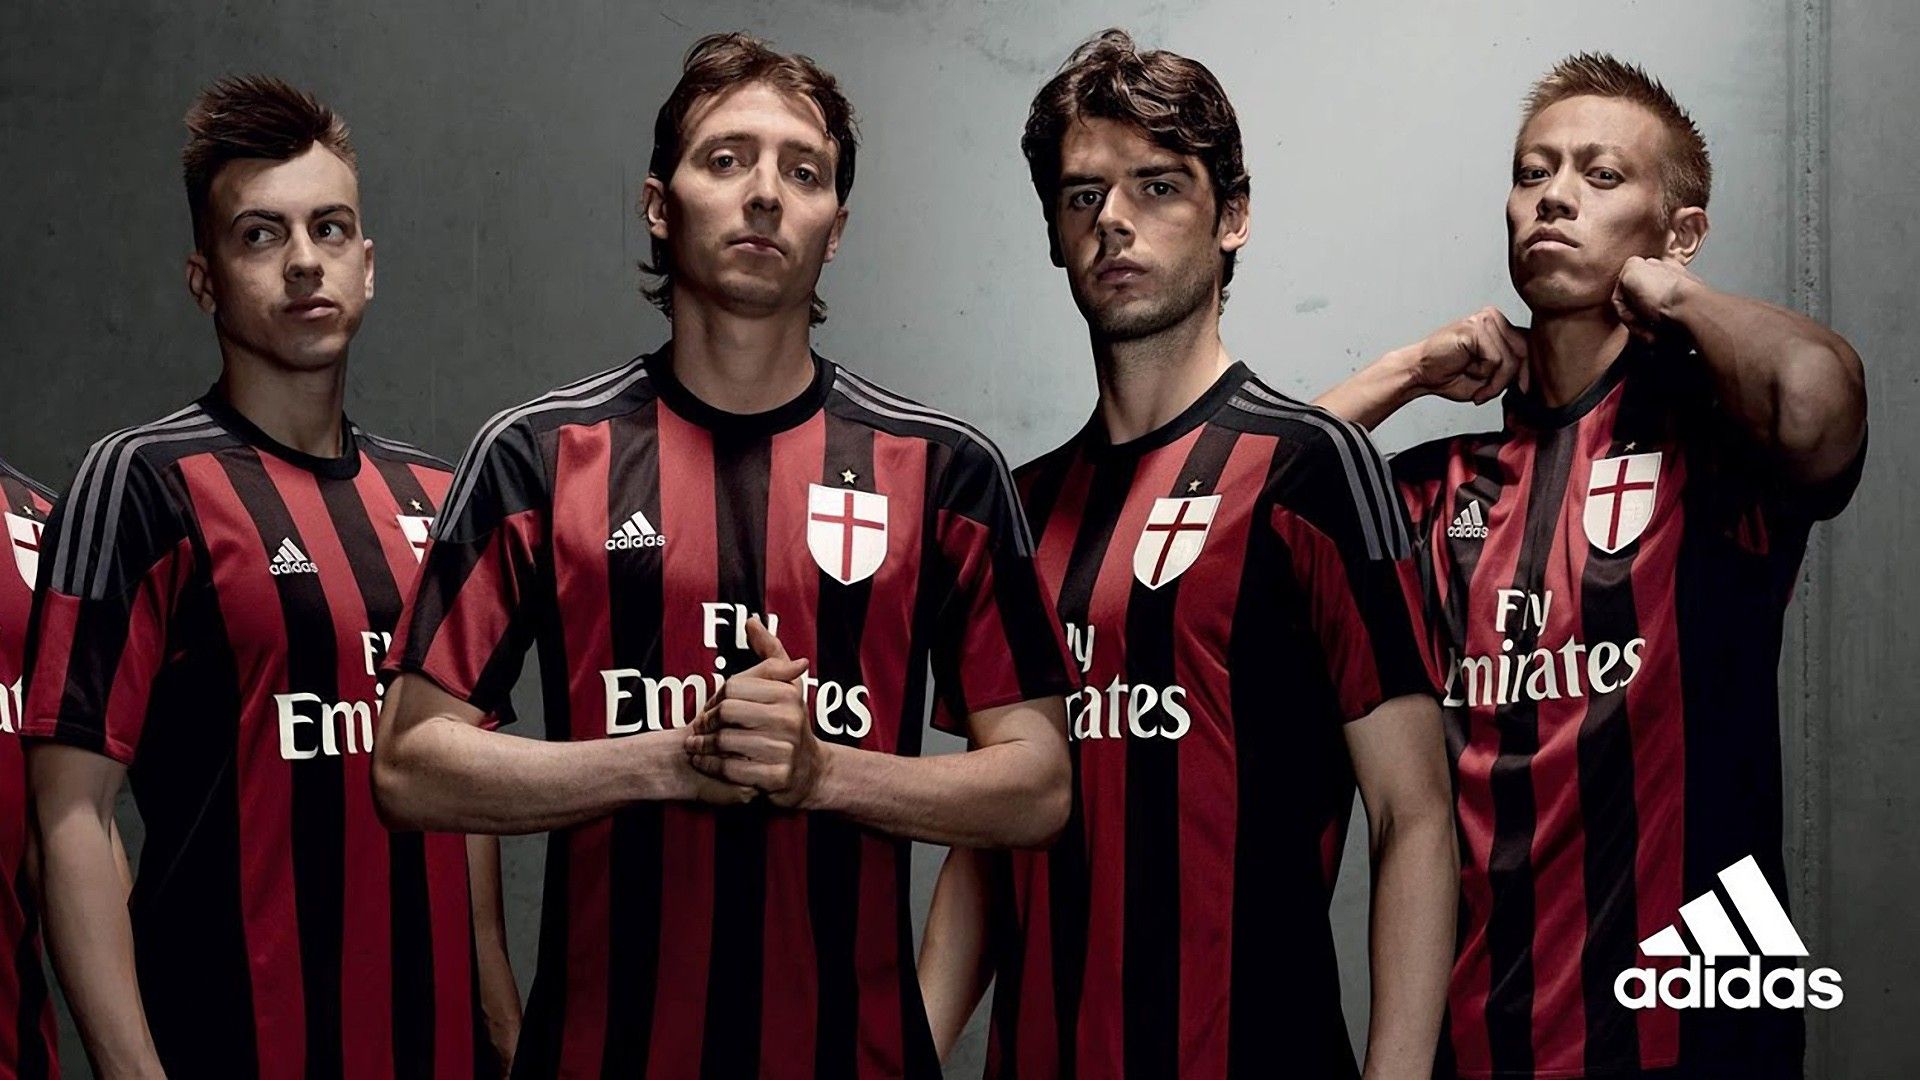 Adidas AC Milan Wallpapers on WallpaperDog